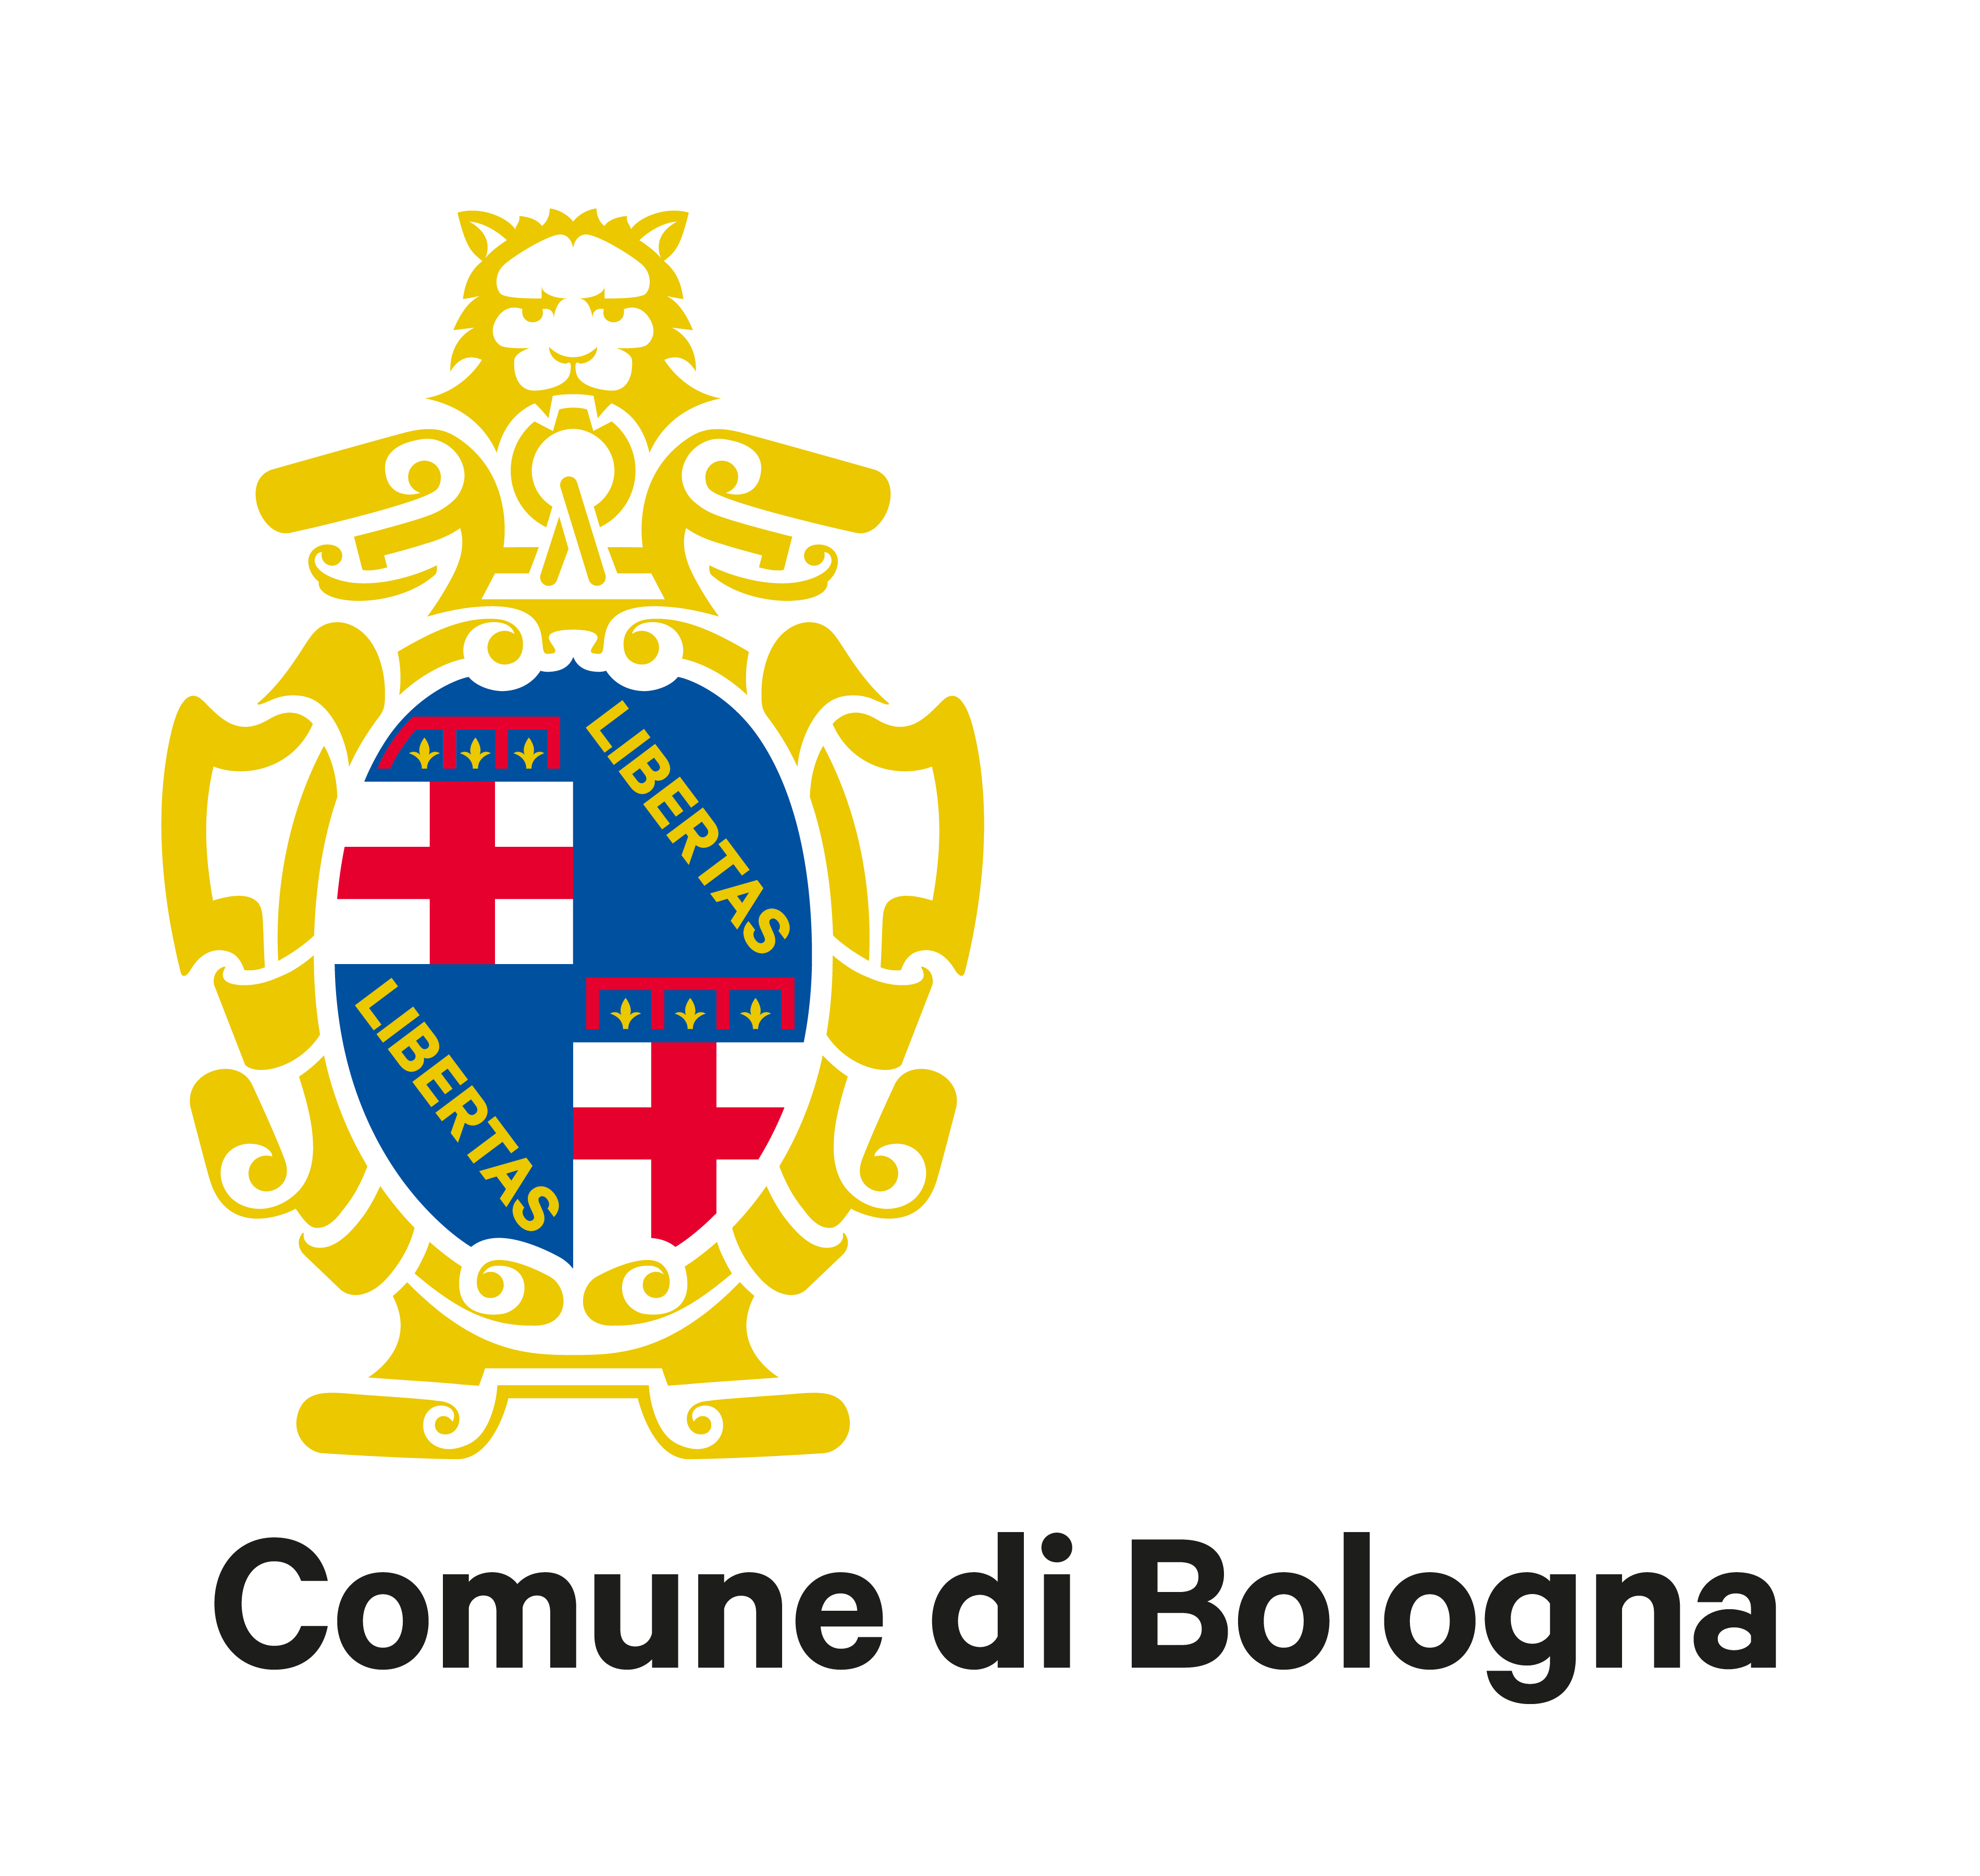 City of Bologna